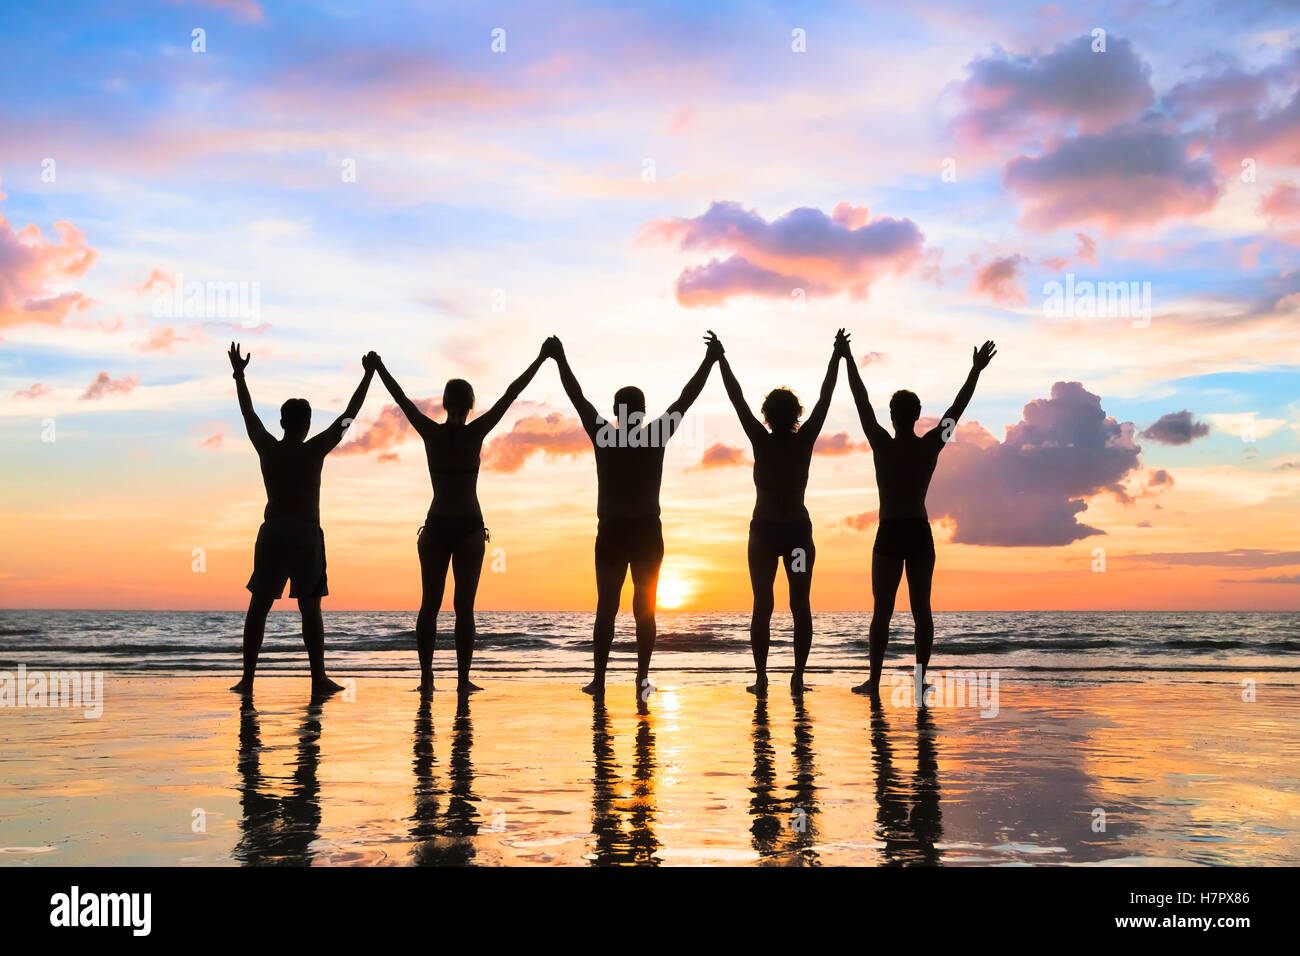 Silueta de un grupo de personas cogidas de las manos en la playa con un hermoso atardecer - concepto acerca del trabajo en equipo, la amistad Foto de stock